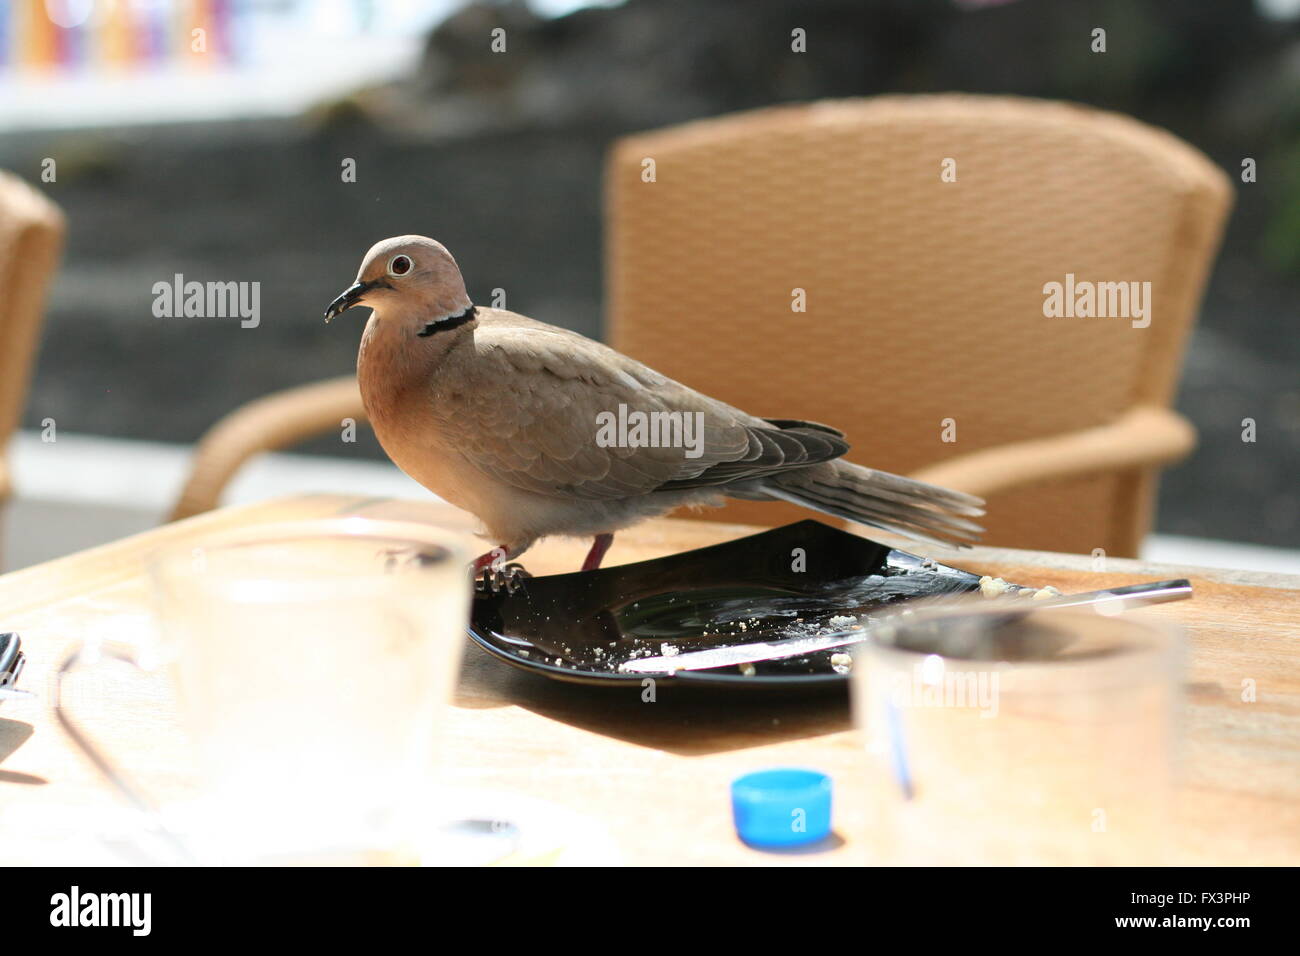 Hungrig Braun, Beige spanisch Taube stehend auf einem Tisch mit Krümel sichtbar, Wildlife Konzept, Sommerferien Konzept Stockfoto